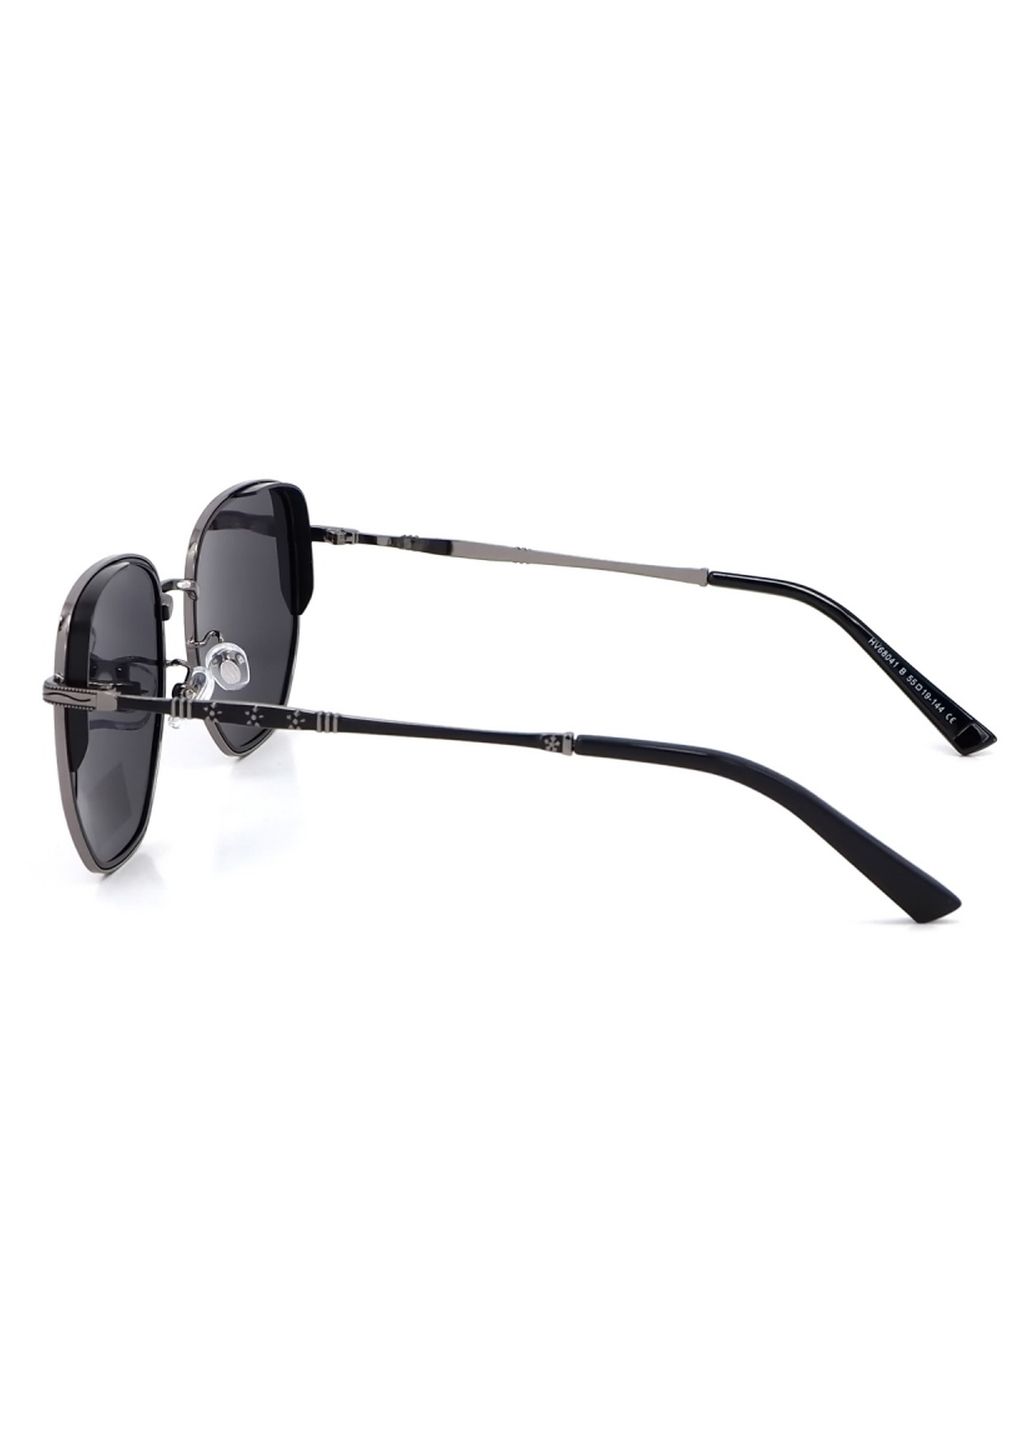 Купить Солнцезащитные очки c поляризацией HAVVS HV68041 170033 - Черный в интернет-магазине